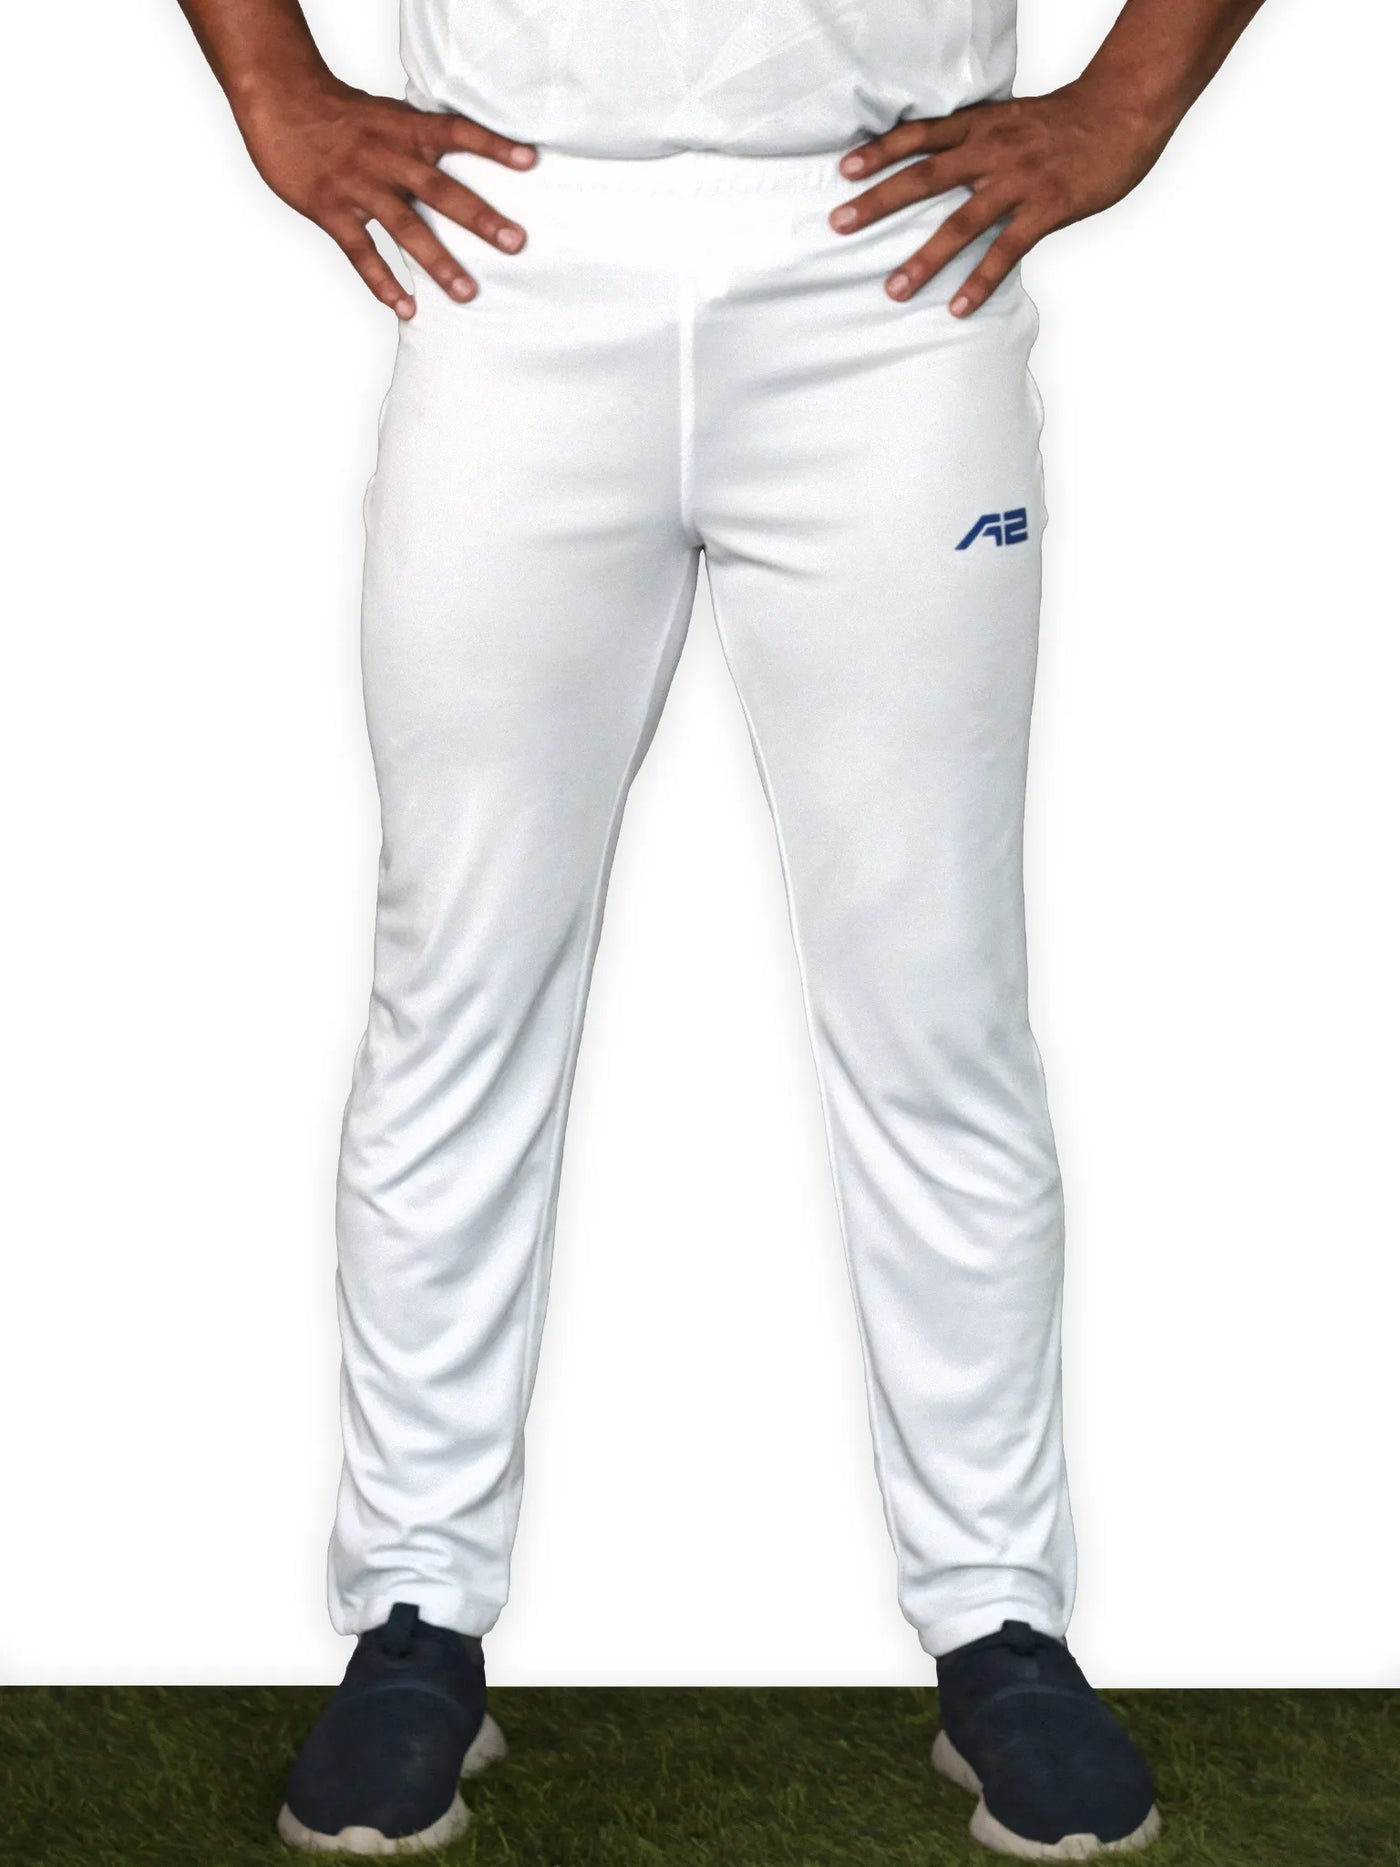 Unisex Cricket White Pant